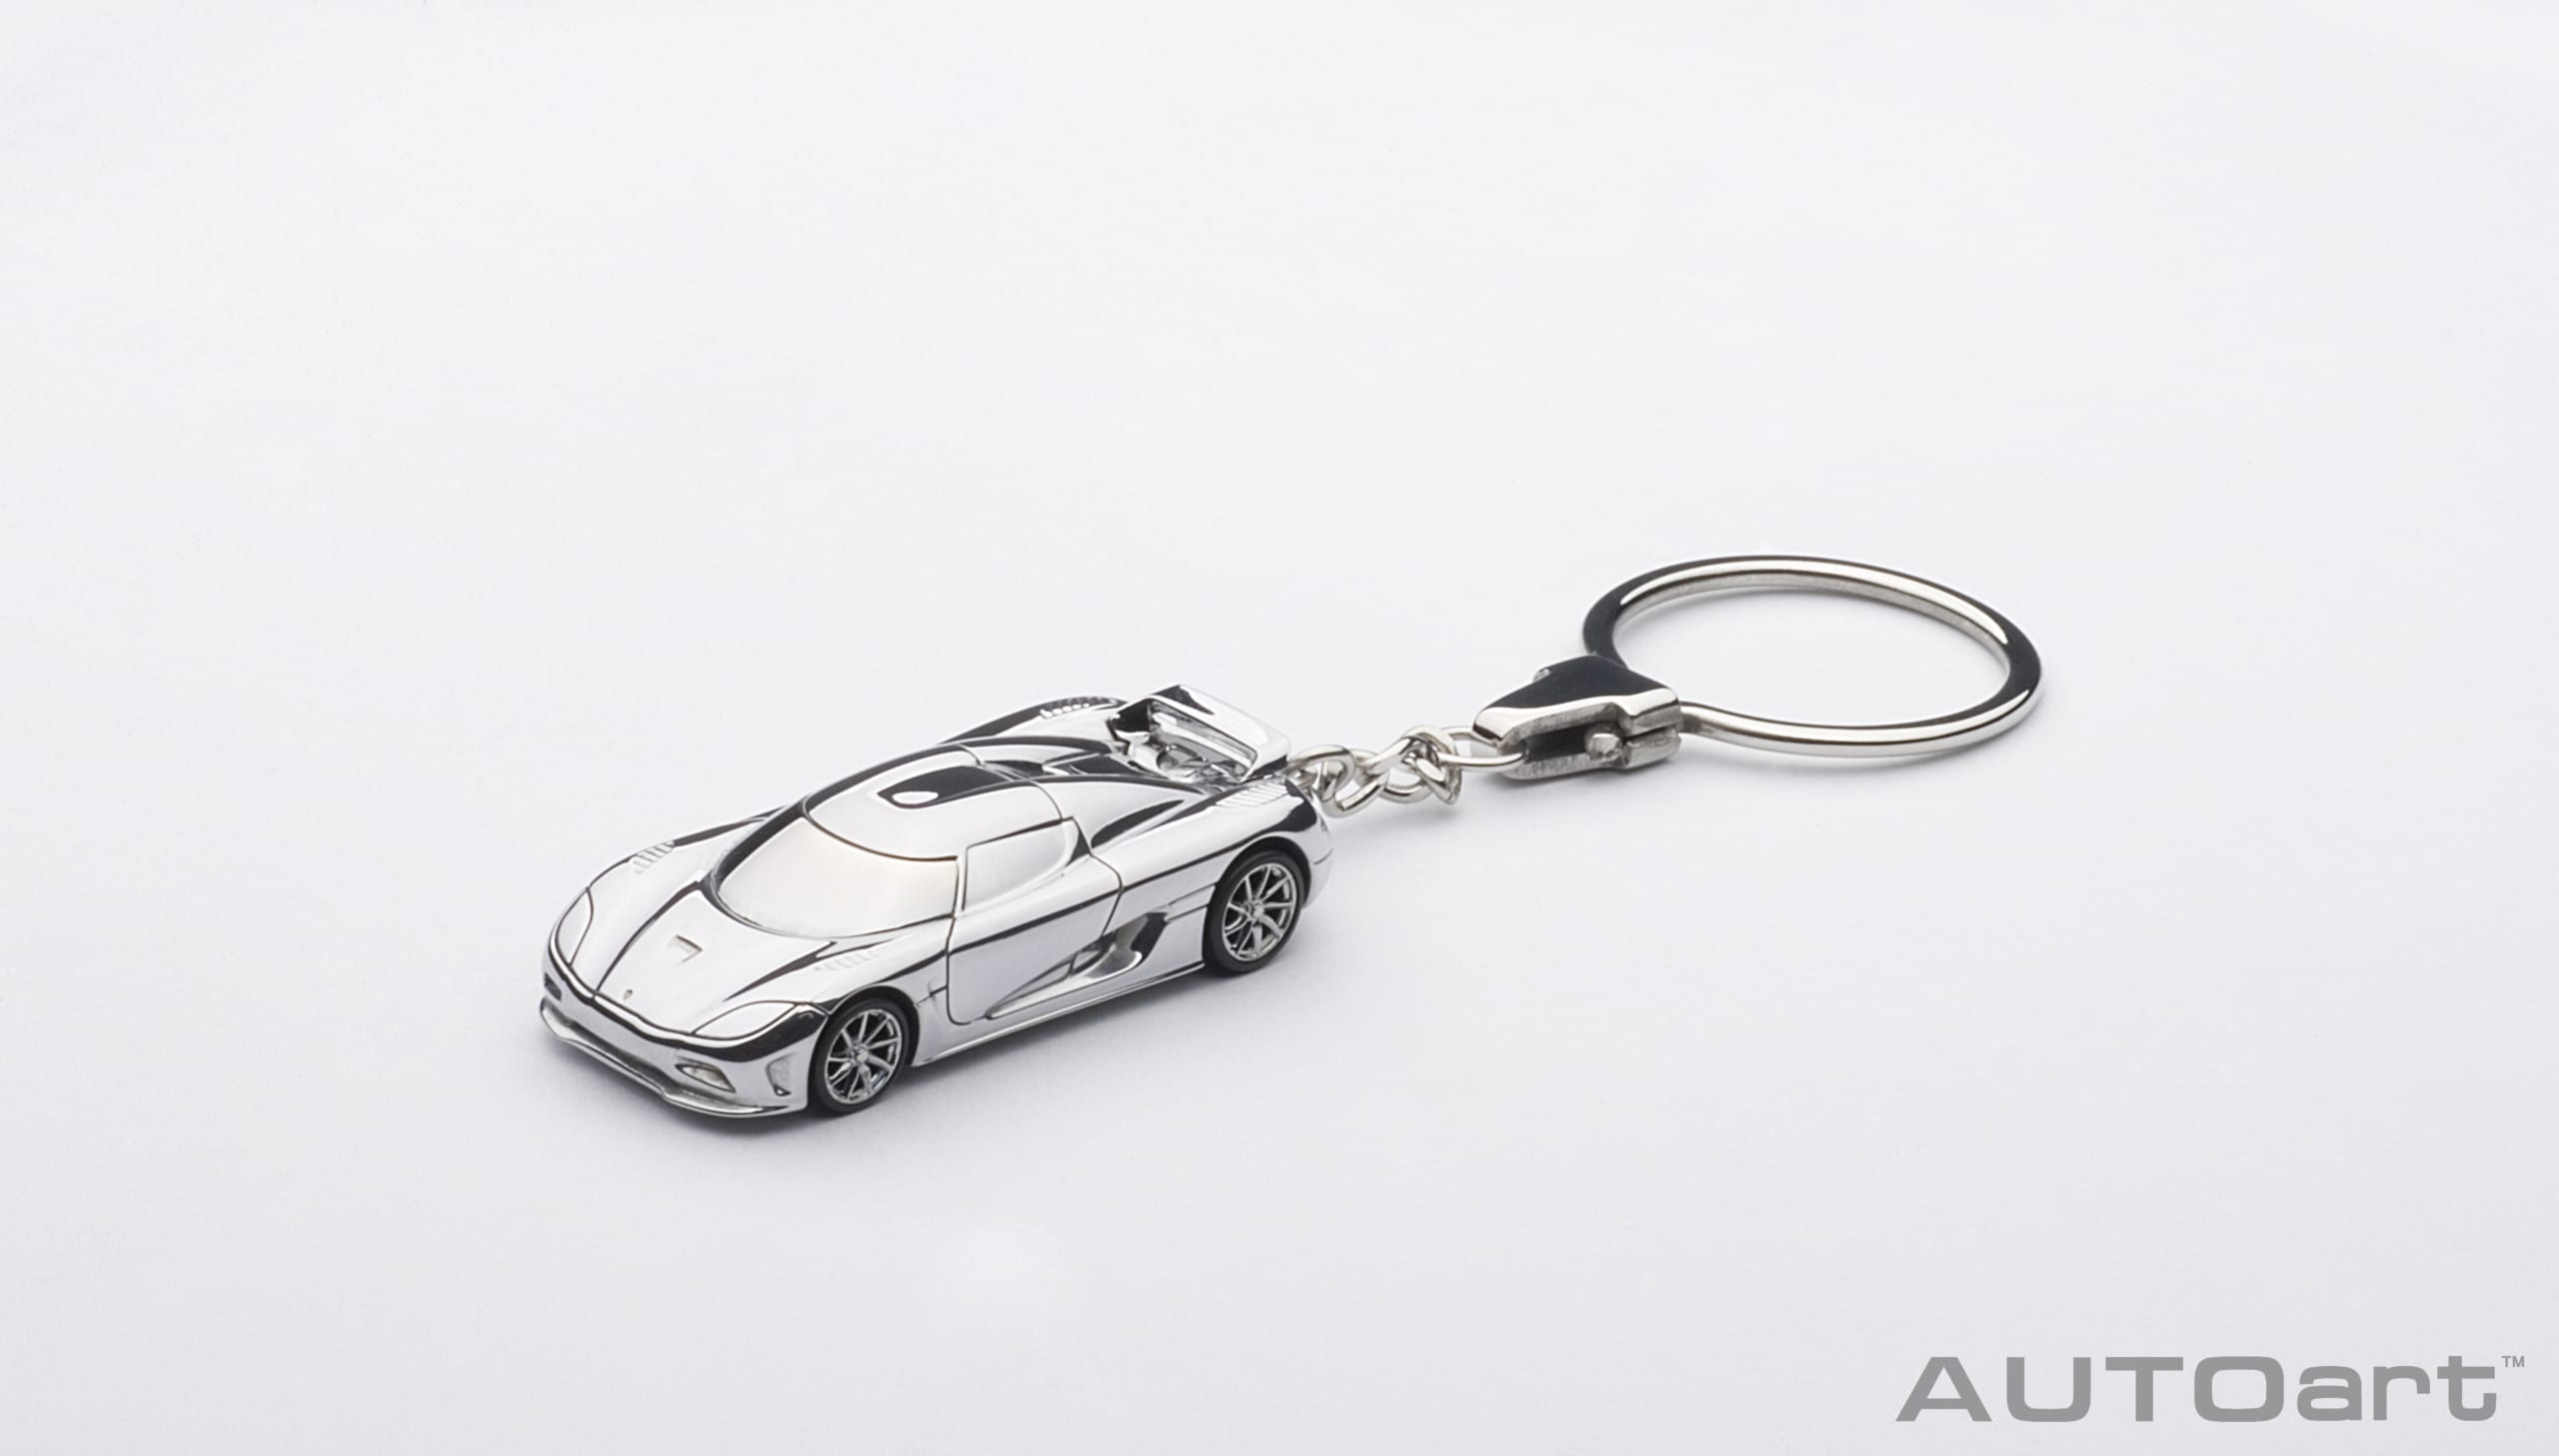 Autoart 41628 Koenigsegg Agera Schlüsselanhänger Keychain Aluminium  1:87